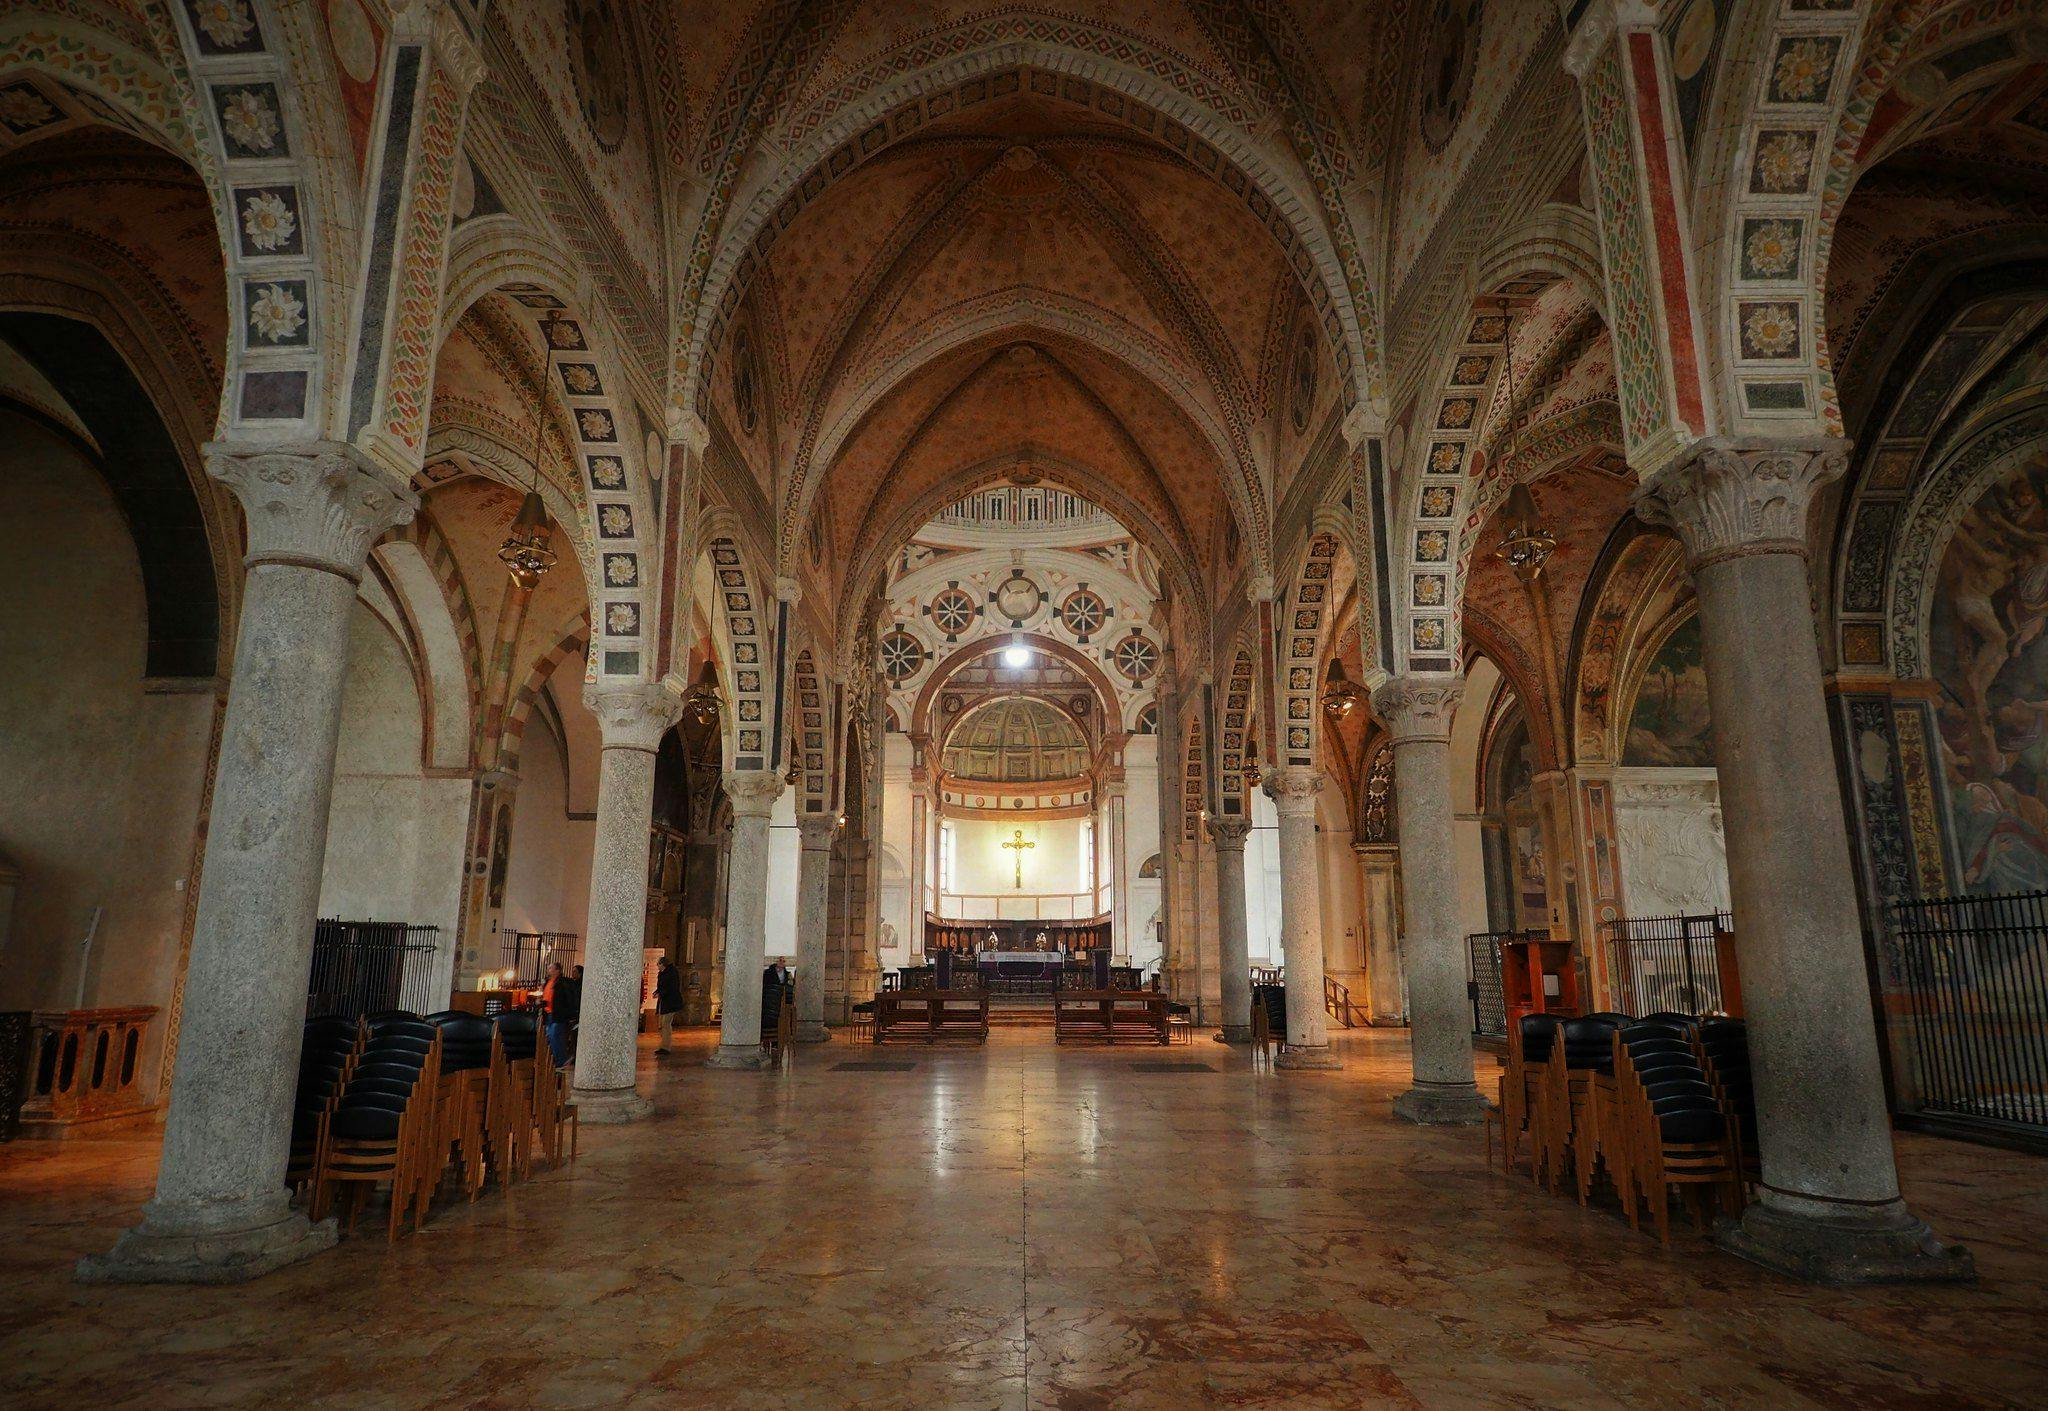 Interior of Santa Maria delle Grazie (by Ștefan Jurcă, CC BY 2.0 via Flickr)